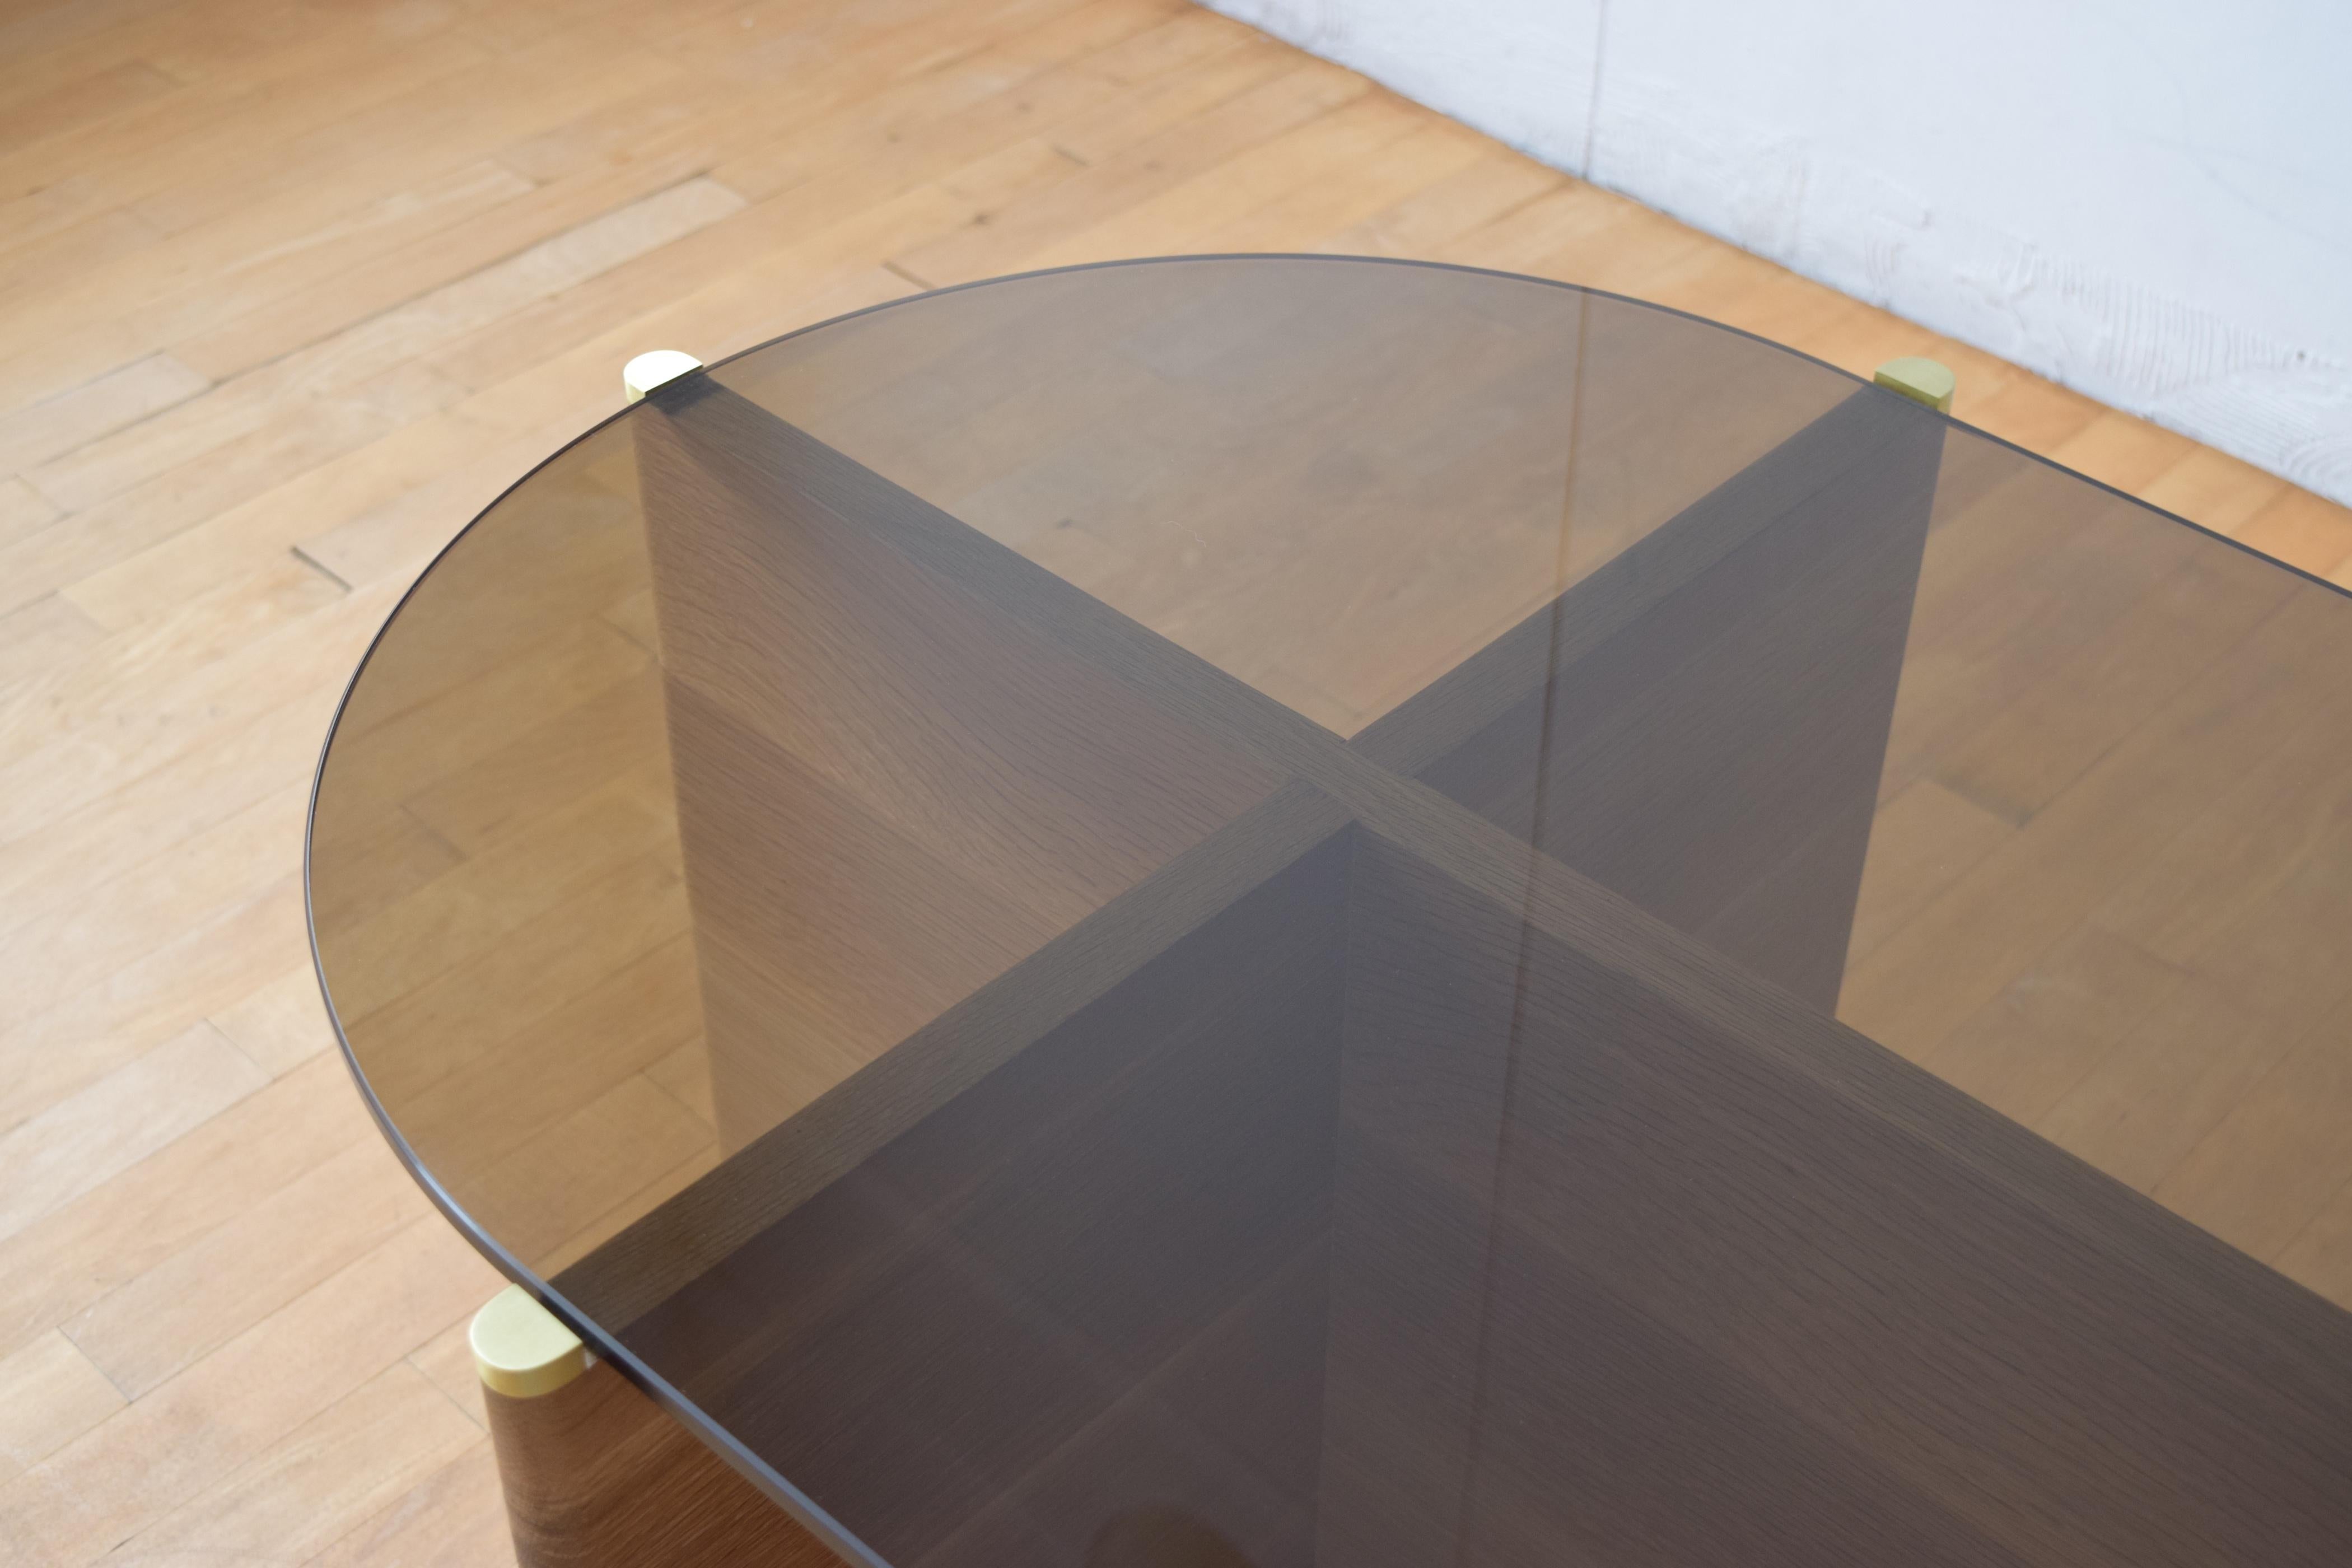 La table Slim est une table basse en bois massif et verre fumé. Le cadre est en chêne blanc rift avec des détails en laiton et supporte un plateau en verre fumé dans une forme classique de pilule.